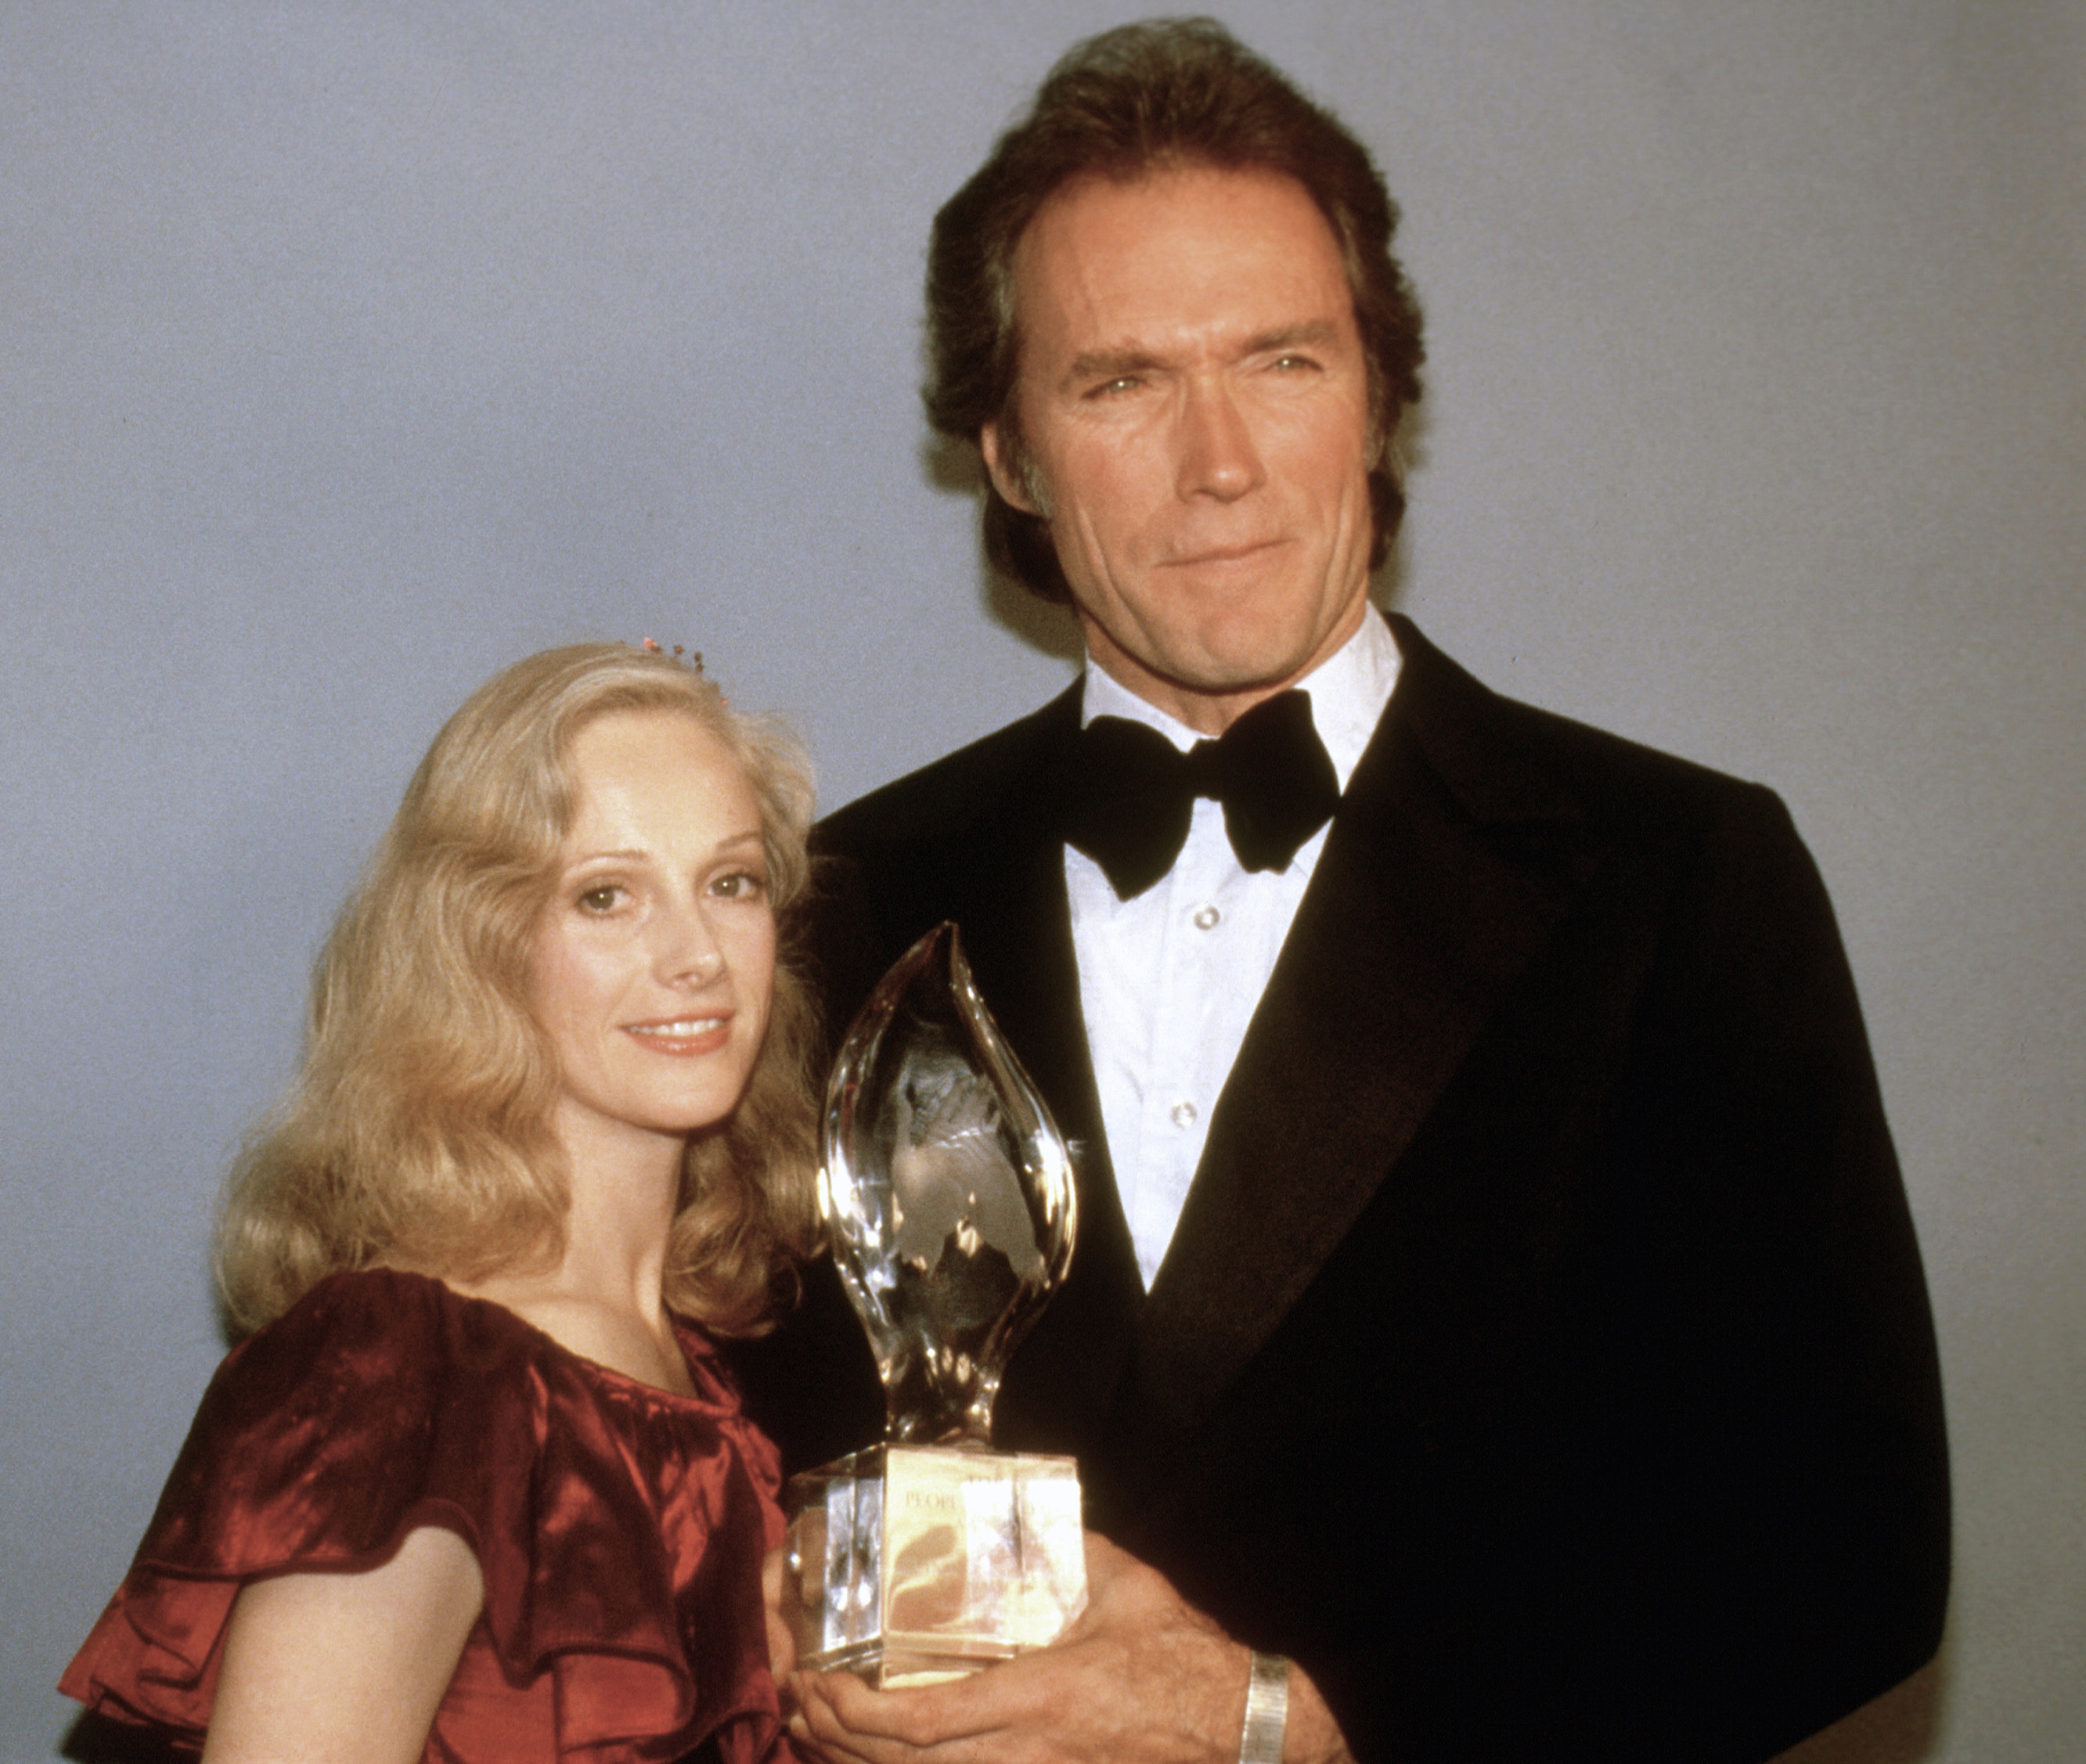 ARCHIVO – En esta fotografía de archivo del 5 de marzo de 1981, Clint Eastwood posa con su novia Sondra Locke, izquierda, al recibir su premio People’s Choice al actor cinematográfico favorito en Los Ángeles. Locke falleció el 3 de noviembre de 2018 a los 74 años. (AP Foto, archivo)